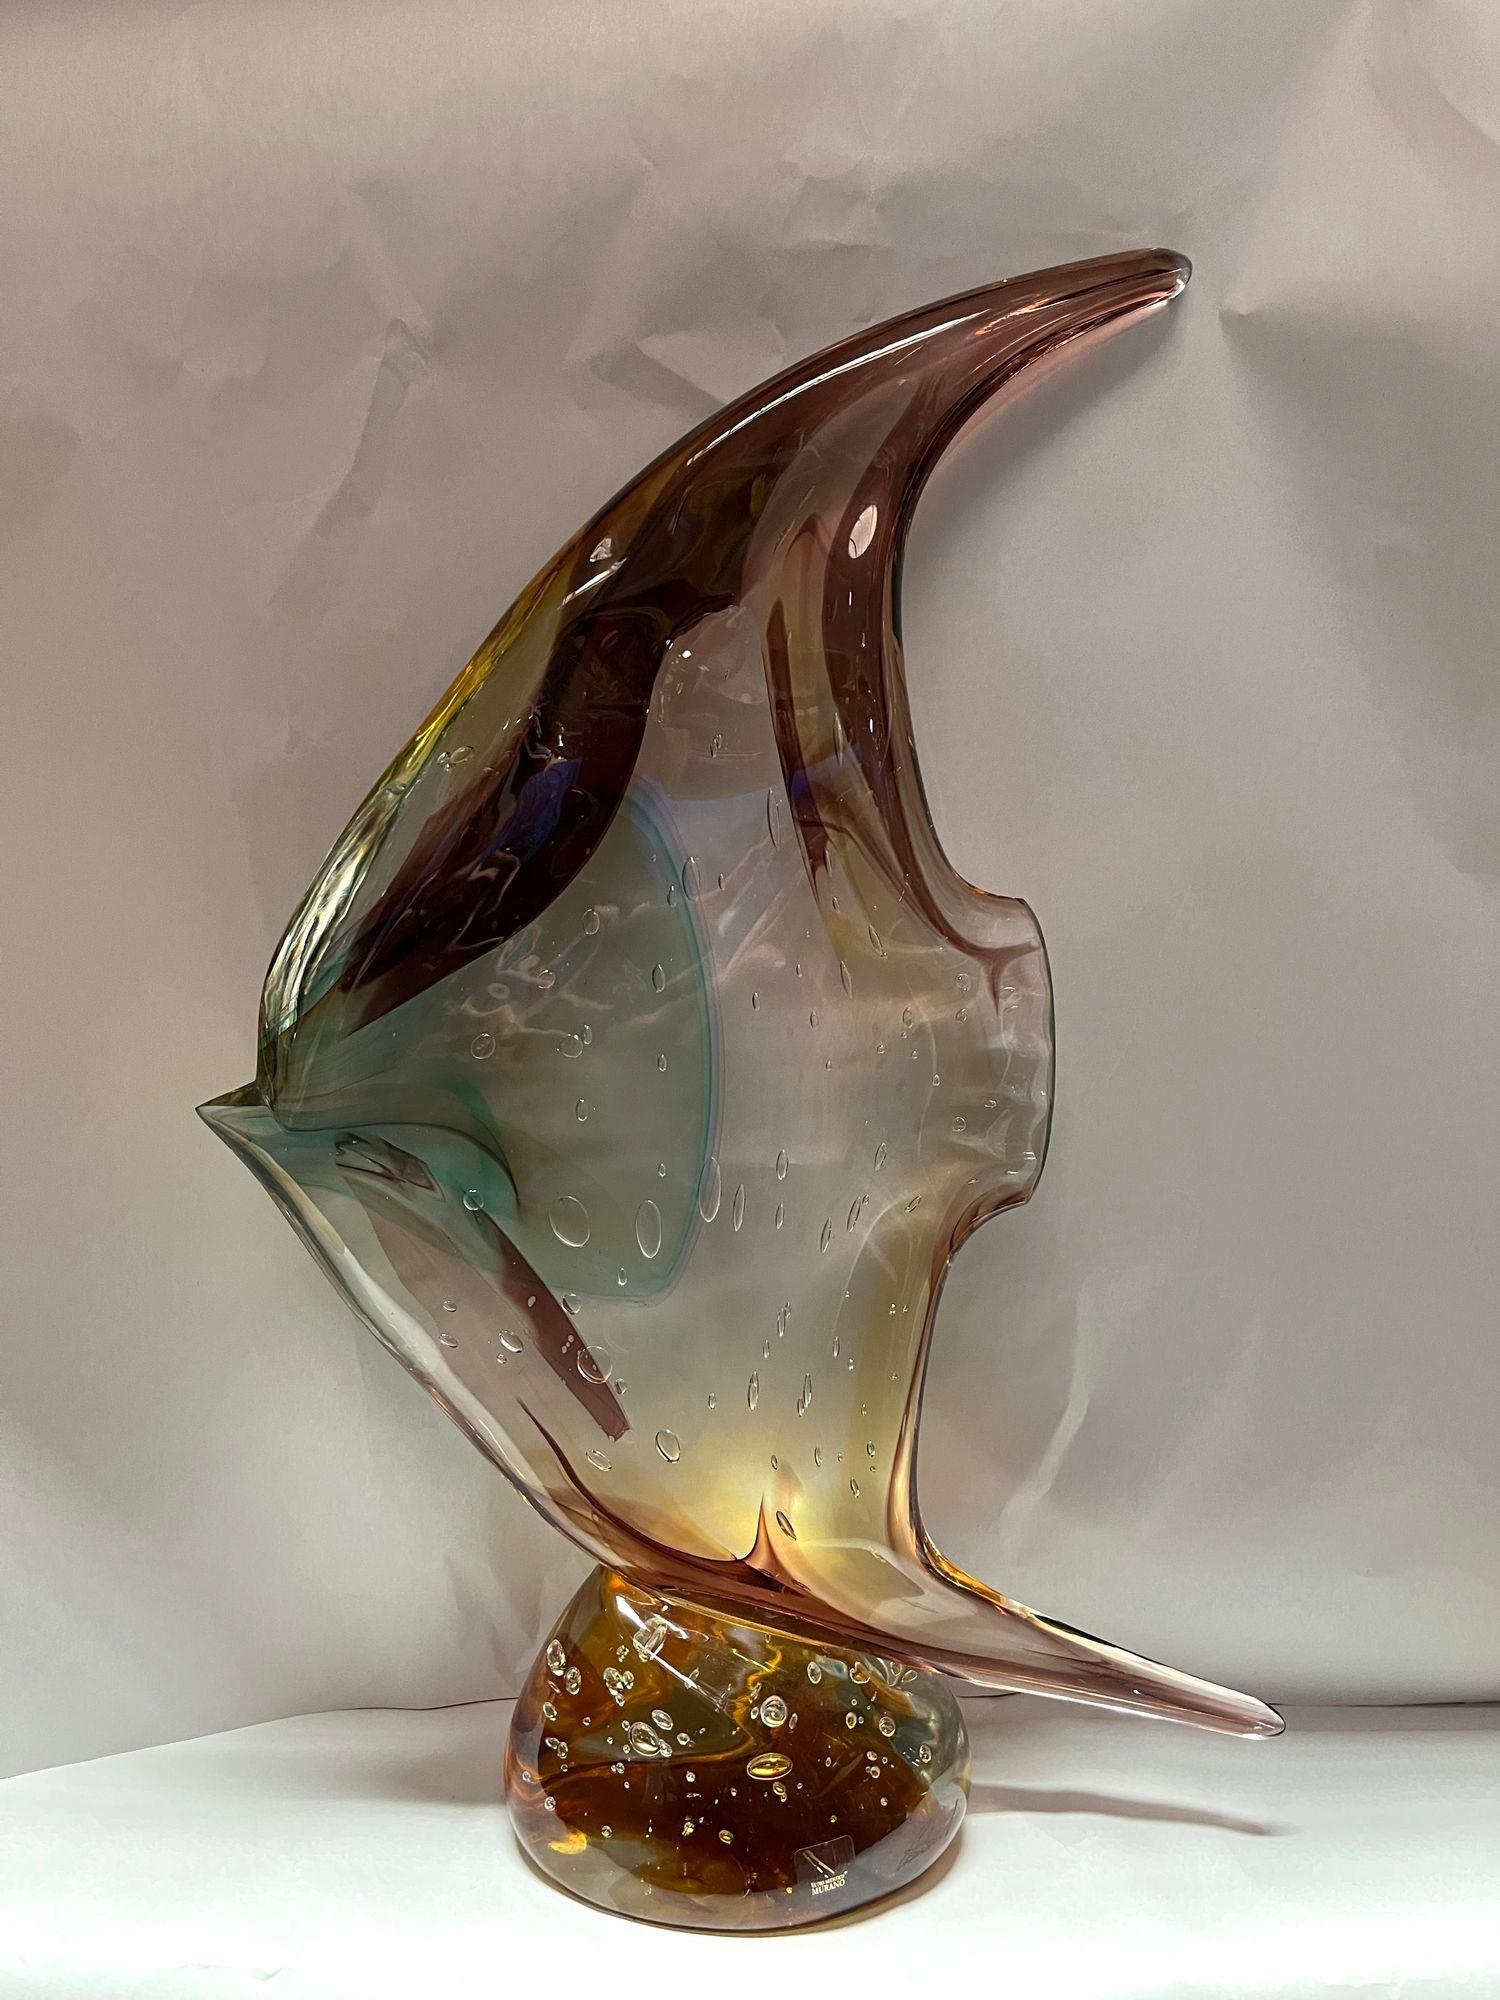 Fischskulptur aus Murano-Glas von Sergio Costantini für Vetro Artistico Murano mit braunen, bernsteinfarbenen, gelben und blauen Farbtönen. Hergestellt in Italien, 20. Jahrhundert (mit Aufkleber und Unterschrift)
Abmessungen:
20 